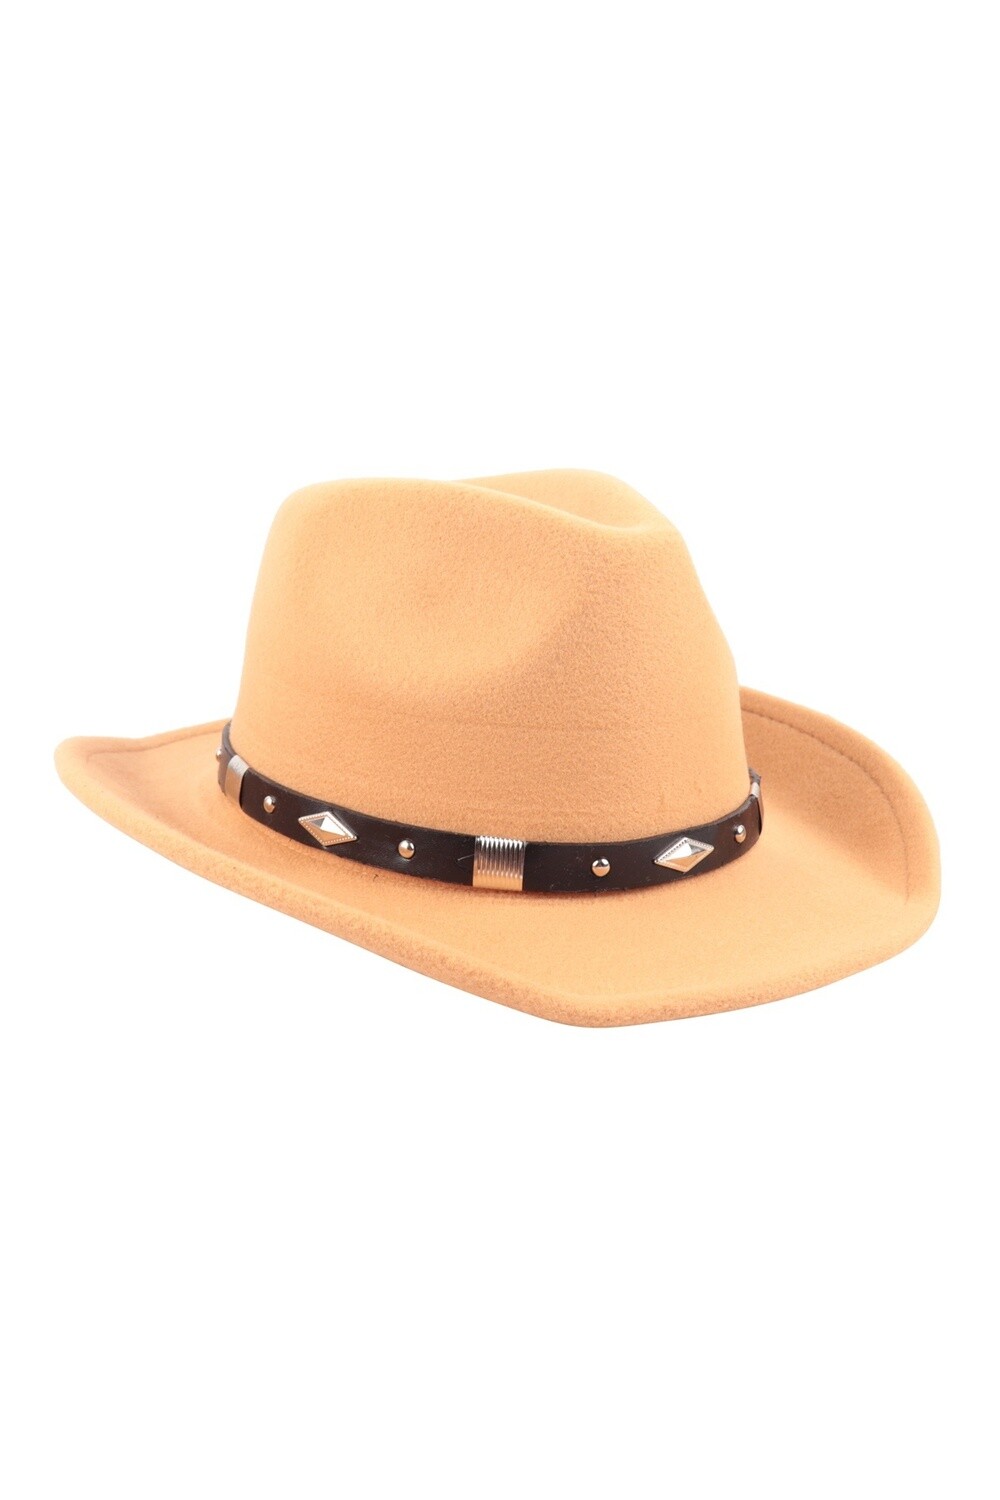 Unisex Felt Cowboy Hat w/ Leather Strap, Color: Camel